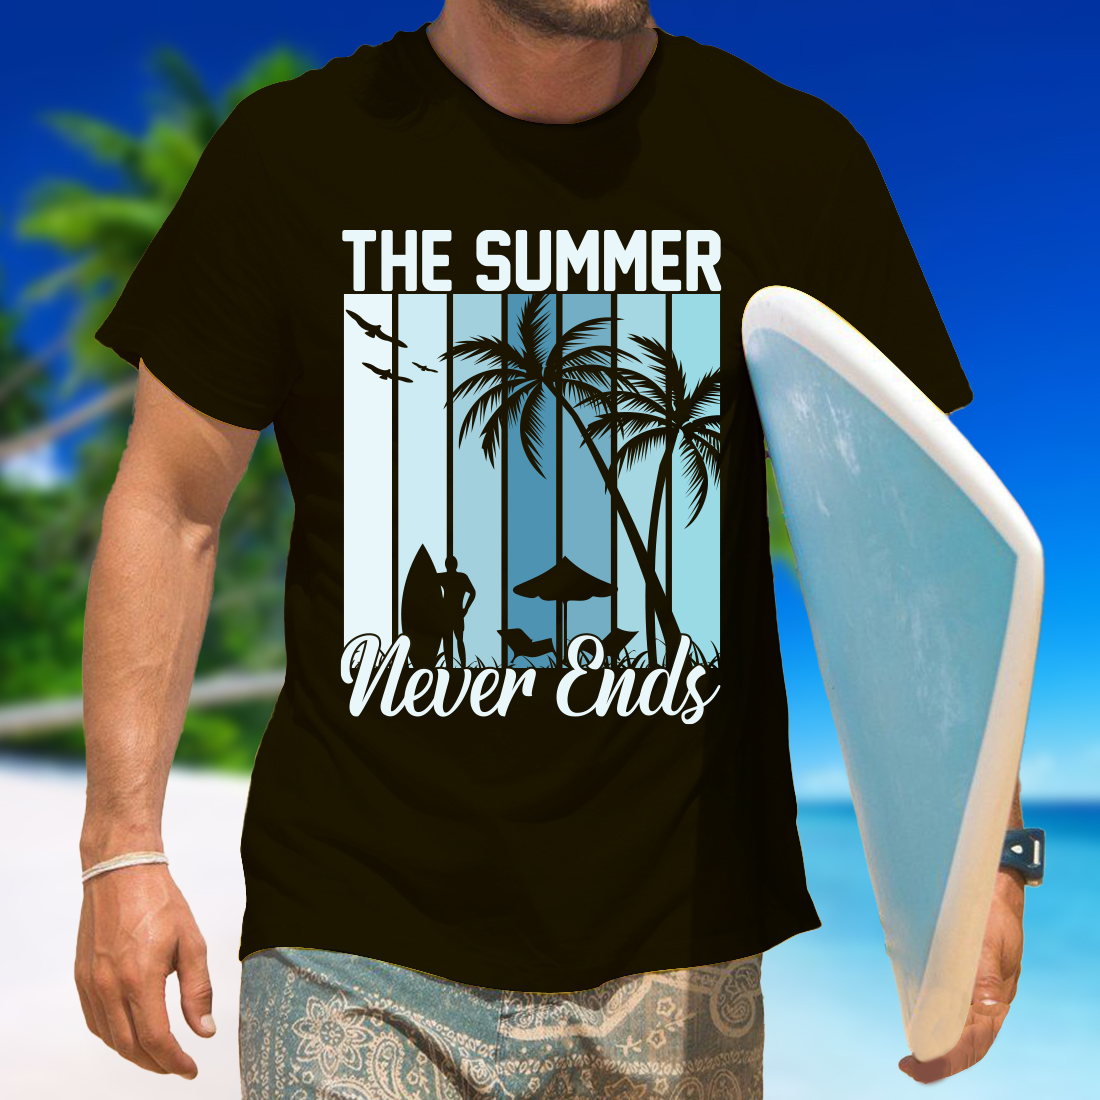 sunset t shirt design 5 913